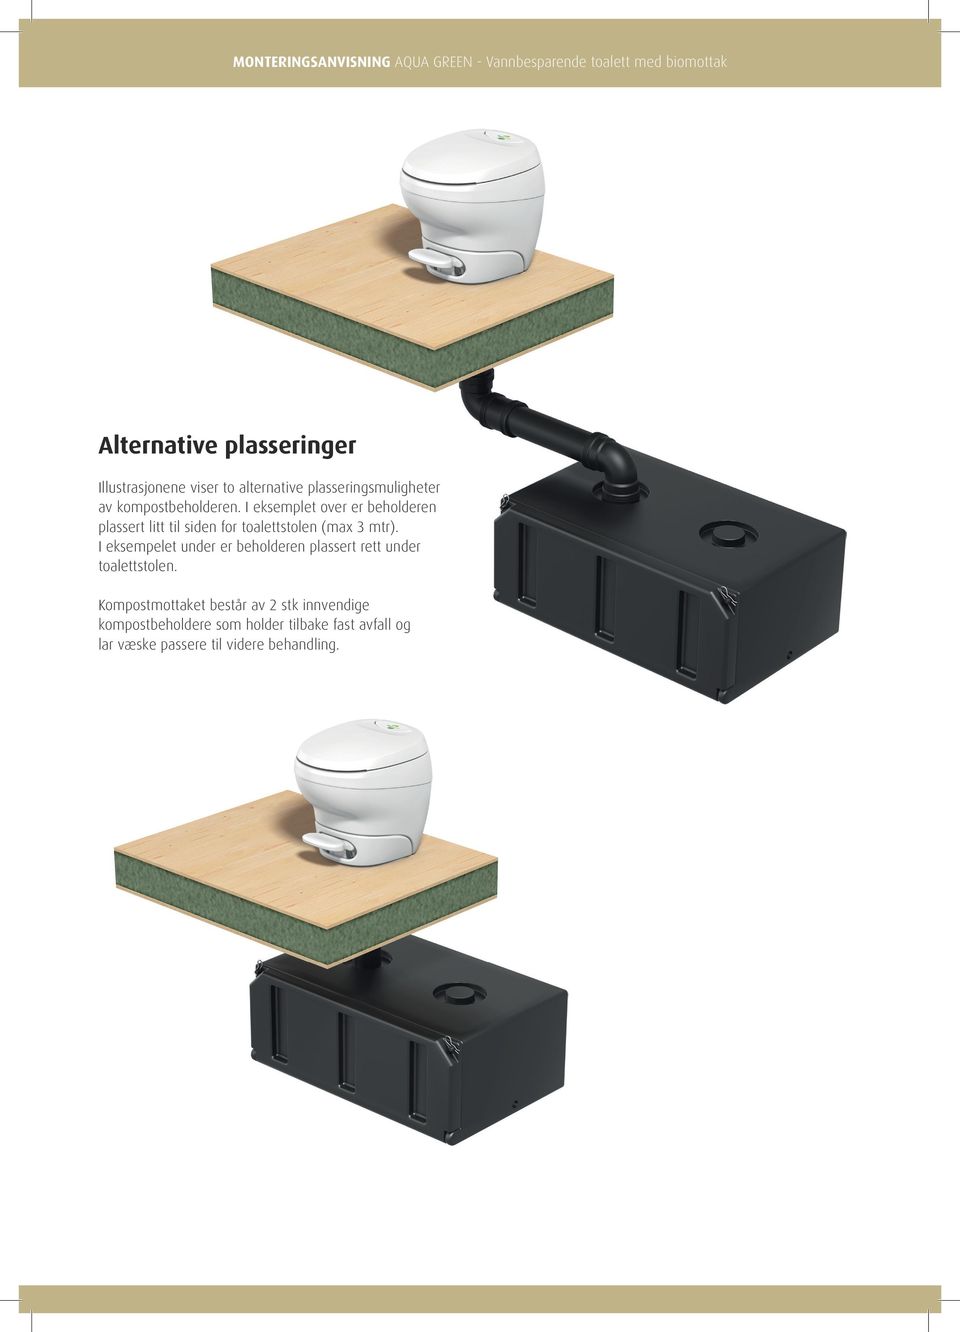 I eksemplet over er beholderen plassert litt til siden for toalettstolen (max 3 mtr).